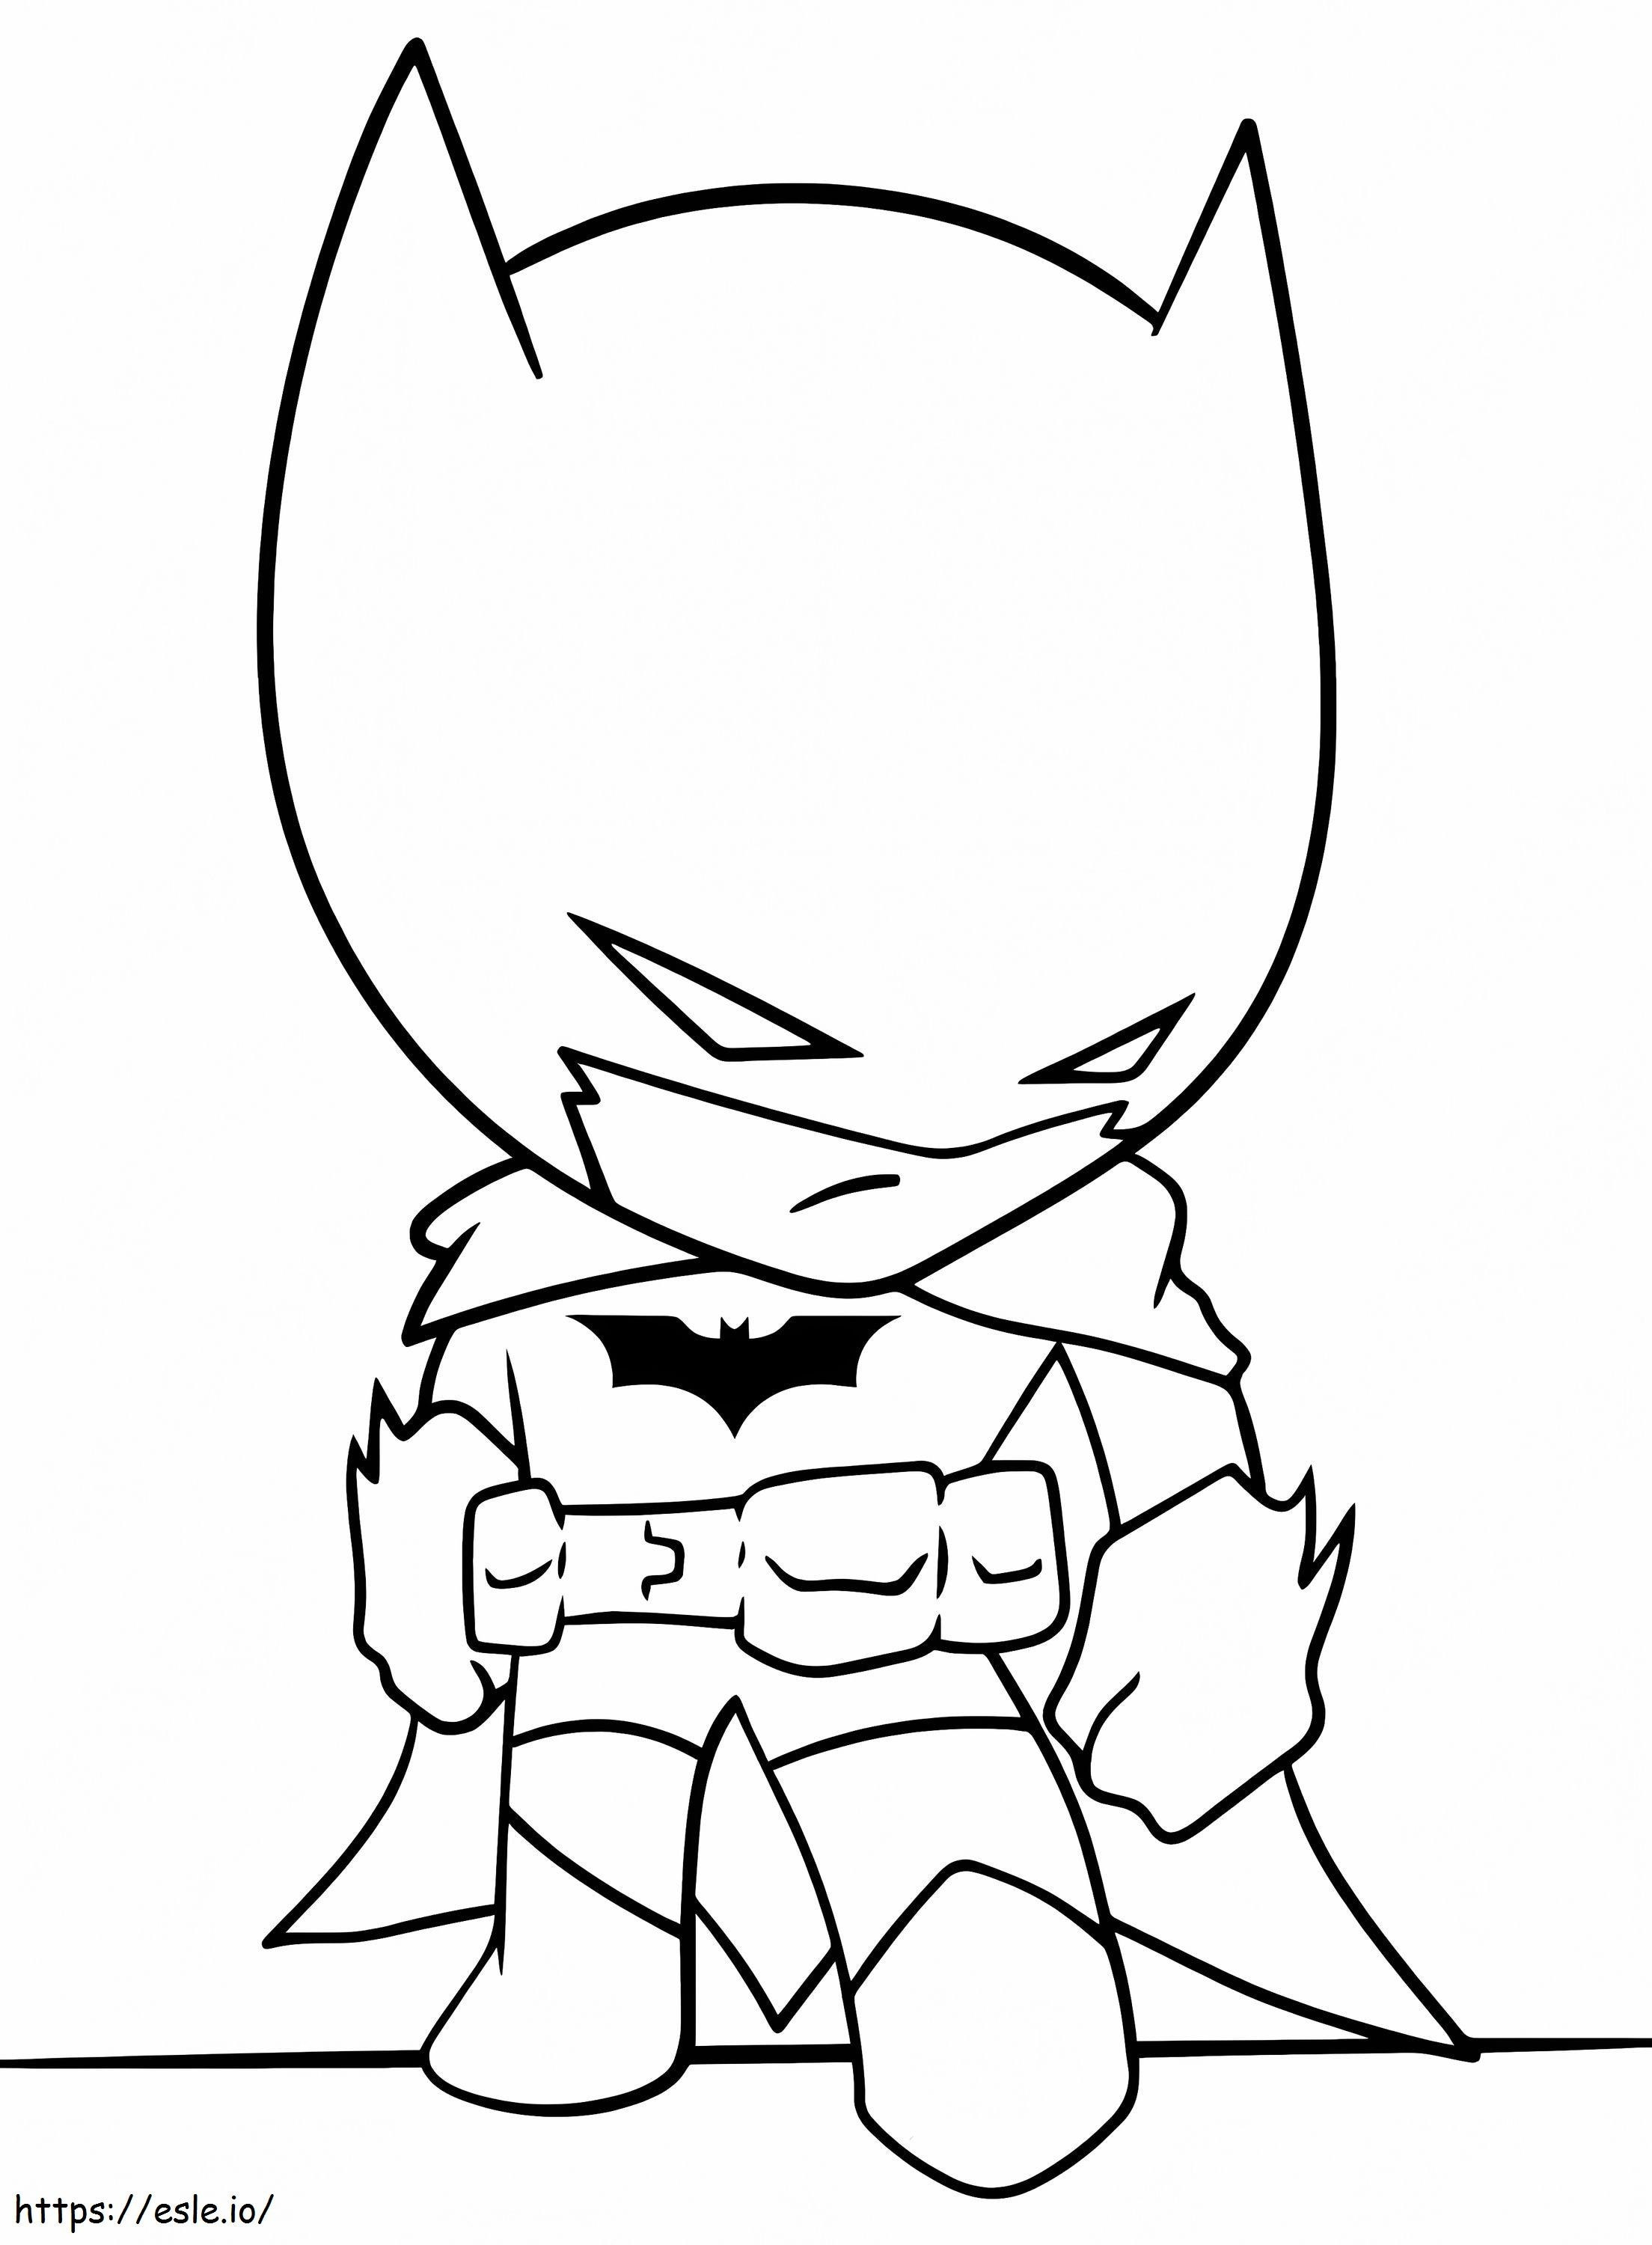 Il piccolo Batman da colorare